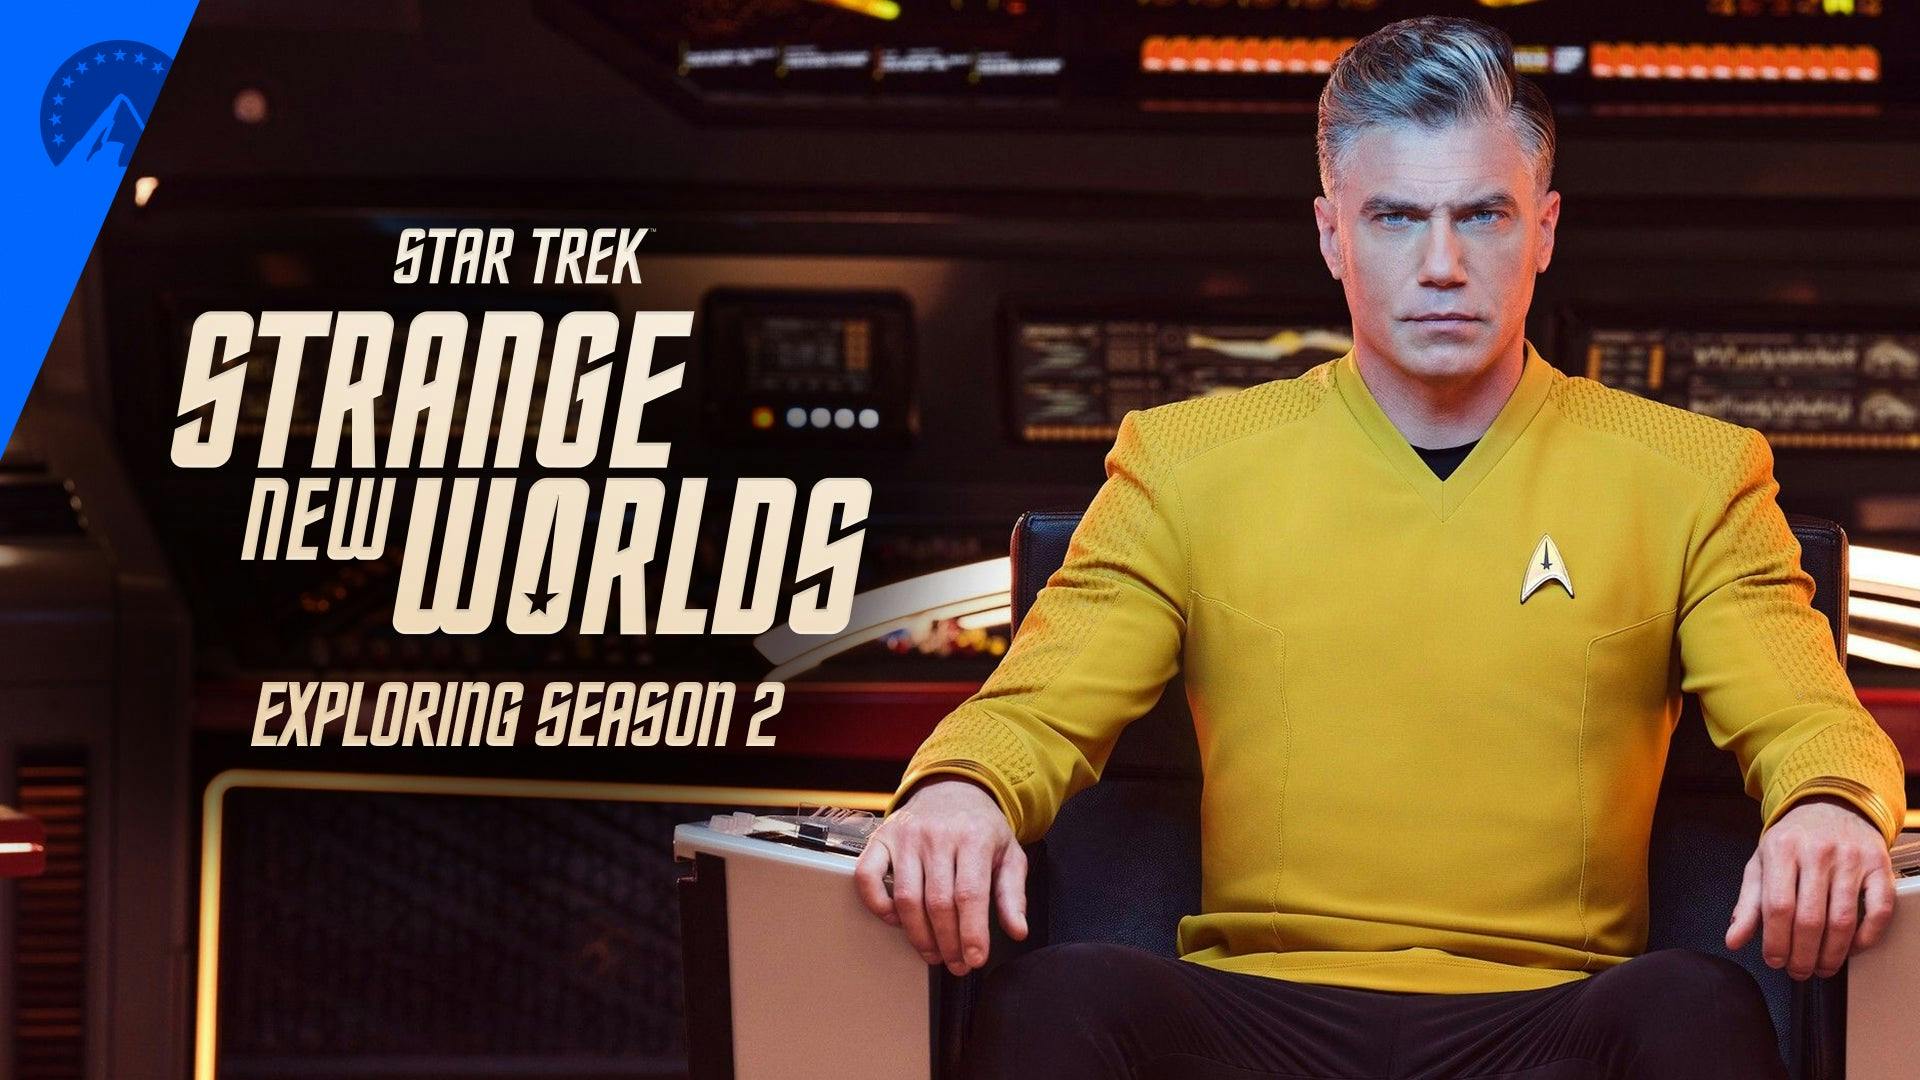 Exploring Season 2 of Star Trek: Strange New Worlds